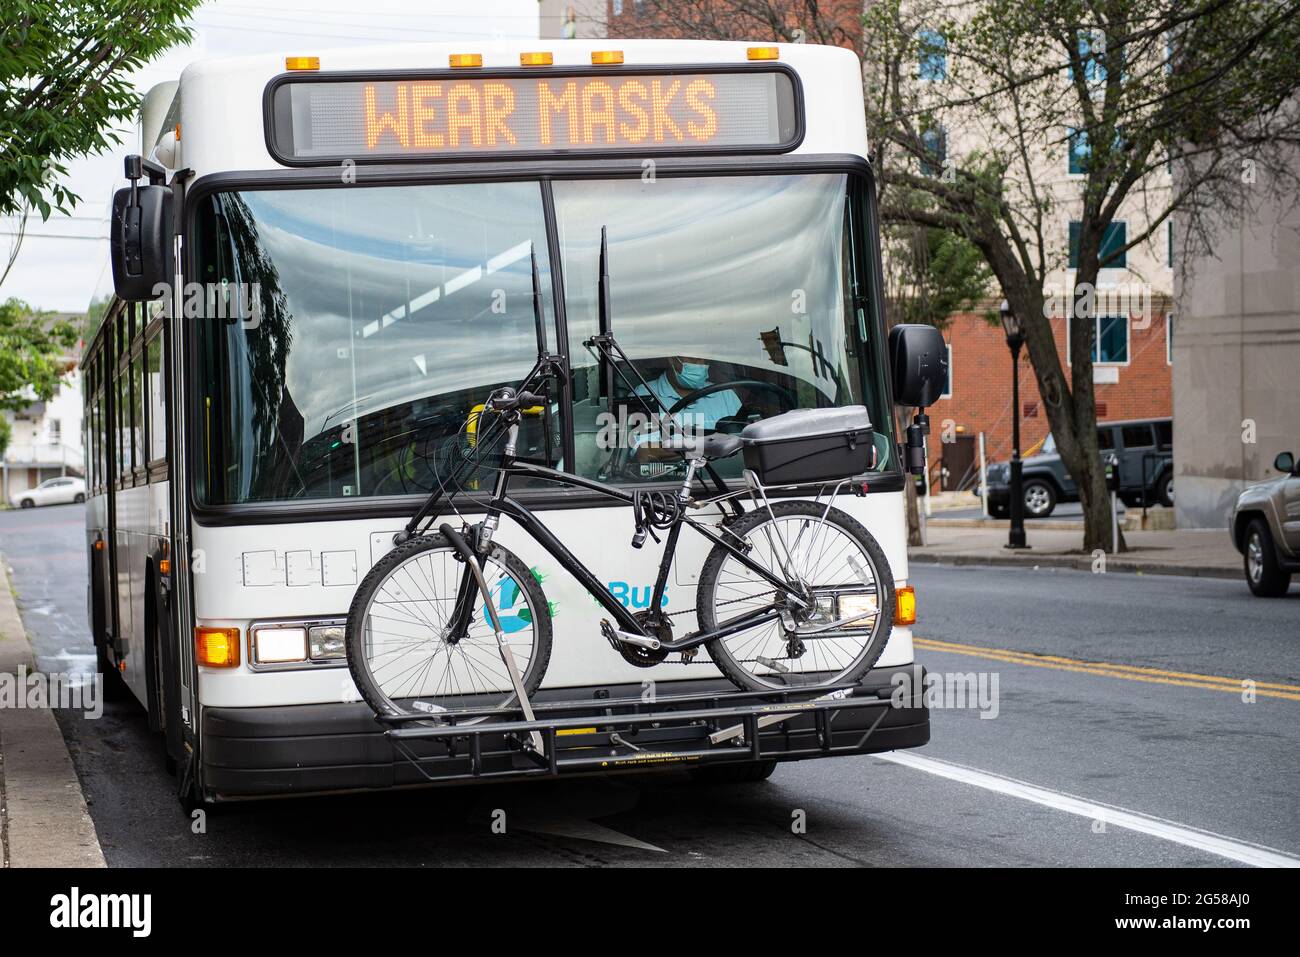 Öffentliche Verkehrsmittel Bus mit einem Schild, das sagt, TRAGEN MASKEN und ein Fahrrad auf der Vorderseite des Busses. Stockfoto